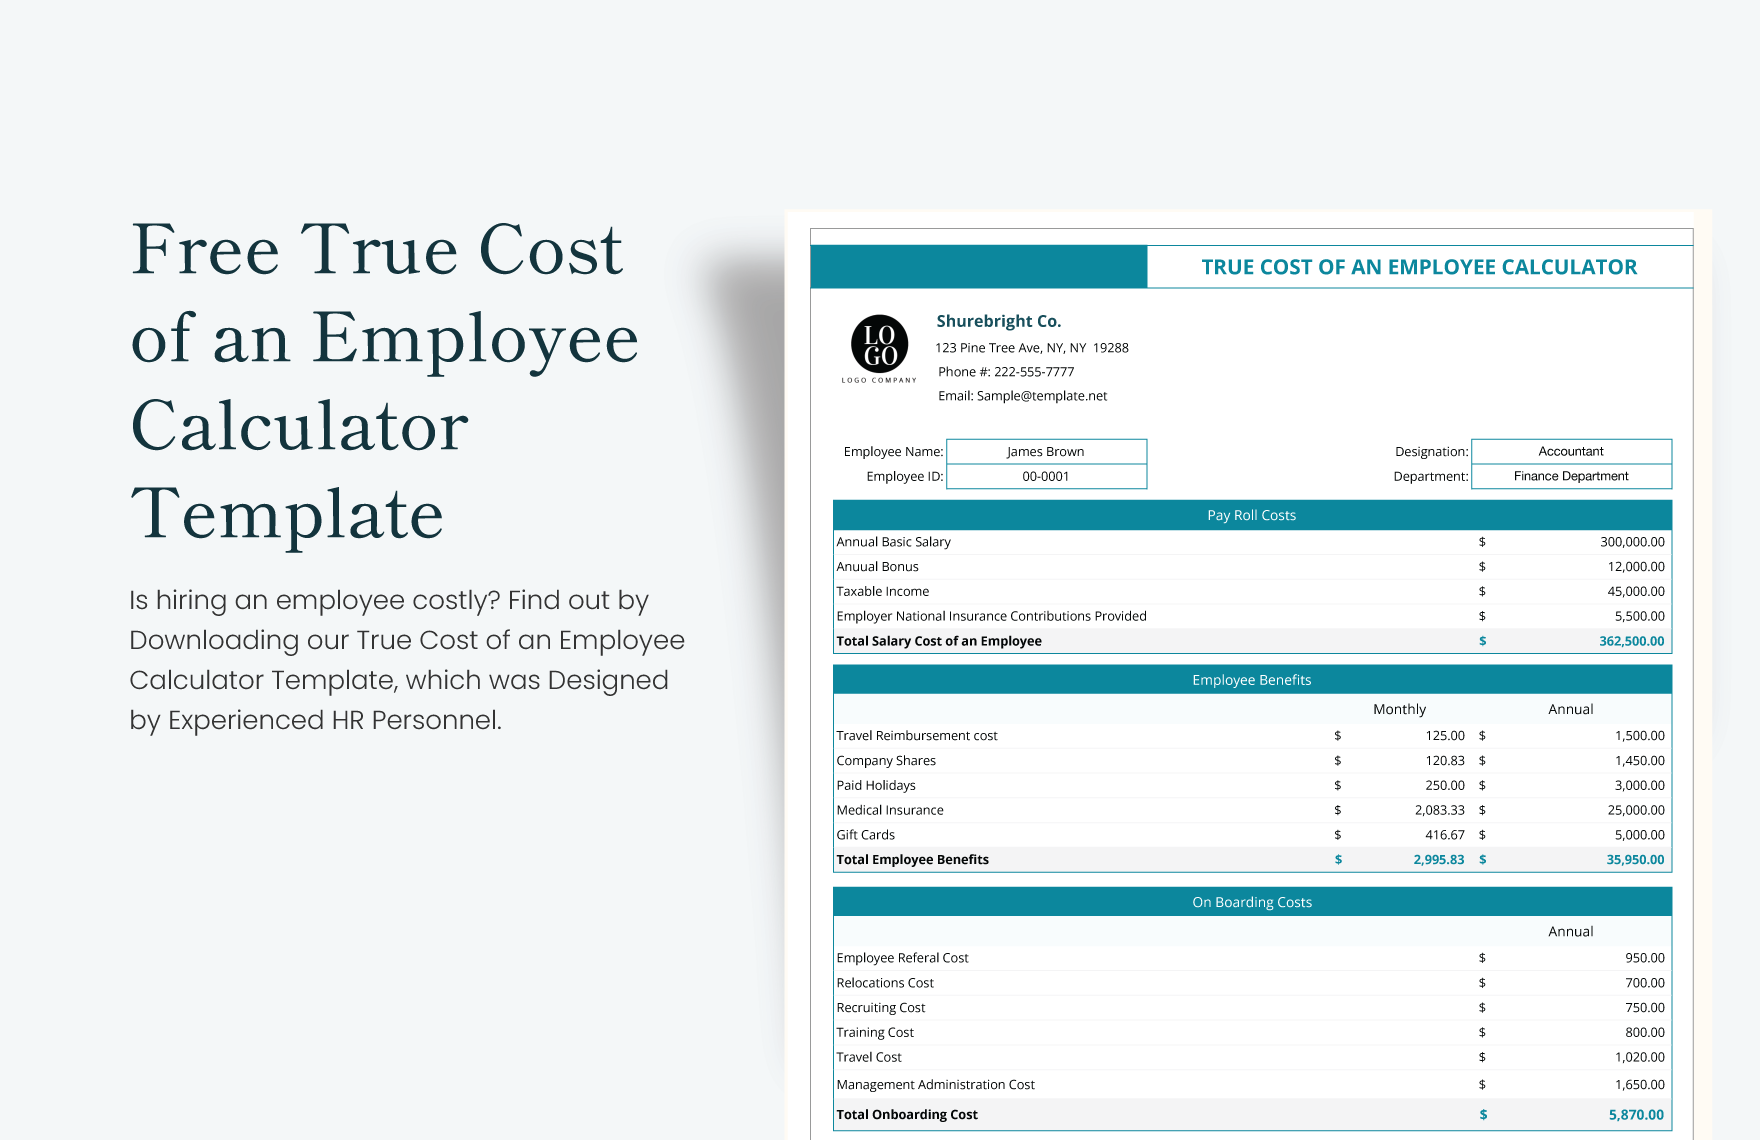 True Cost of an Employee Calculator Template